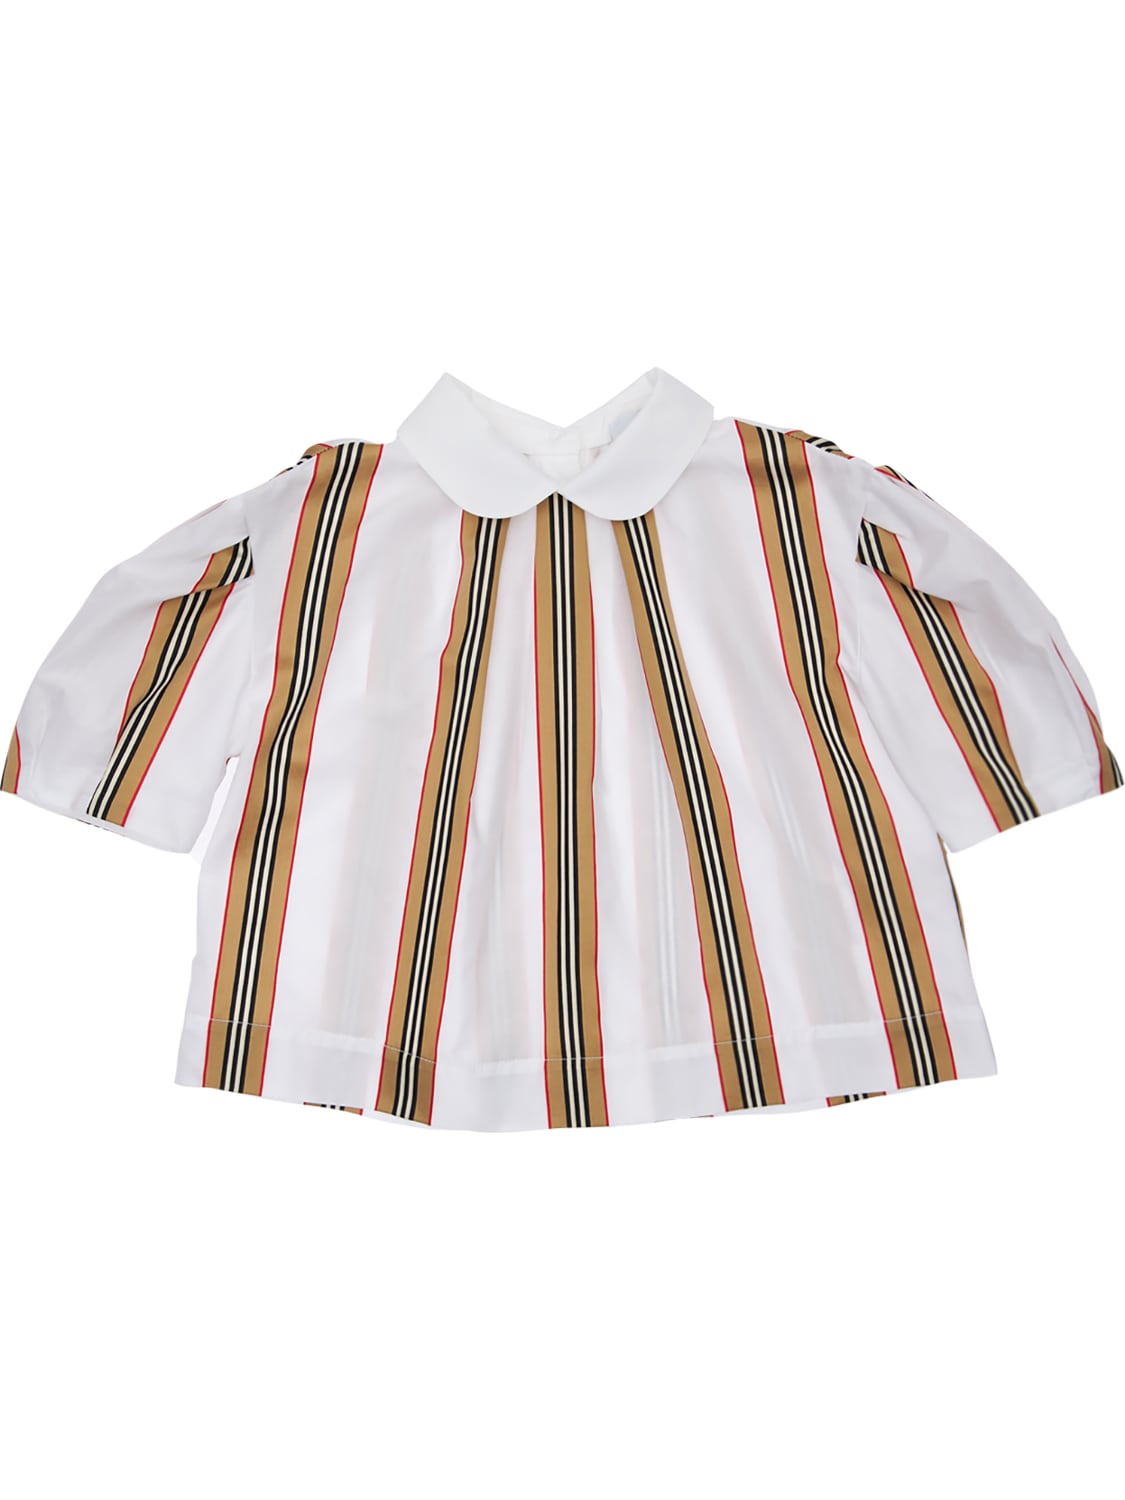 BURBERRY 条纹纯棉衬衫,73I91L026-QTCYNZE1